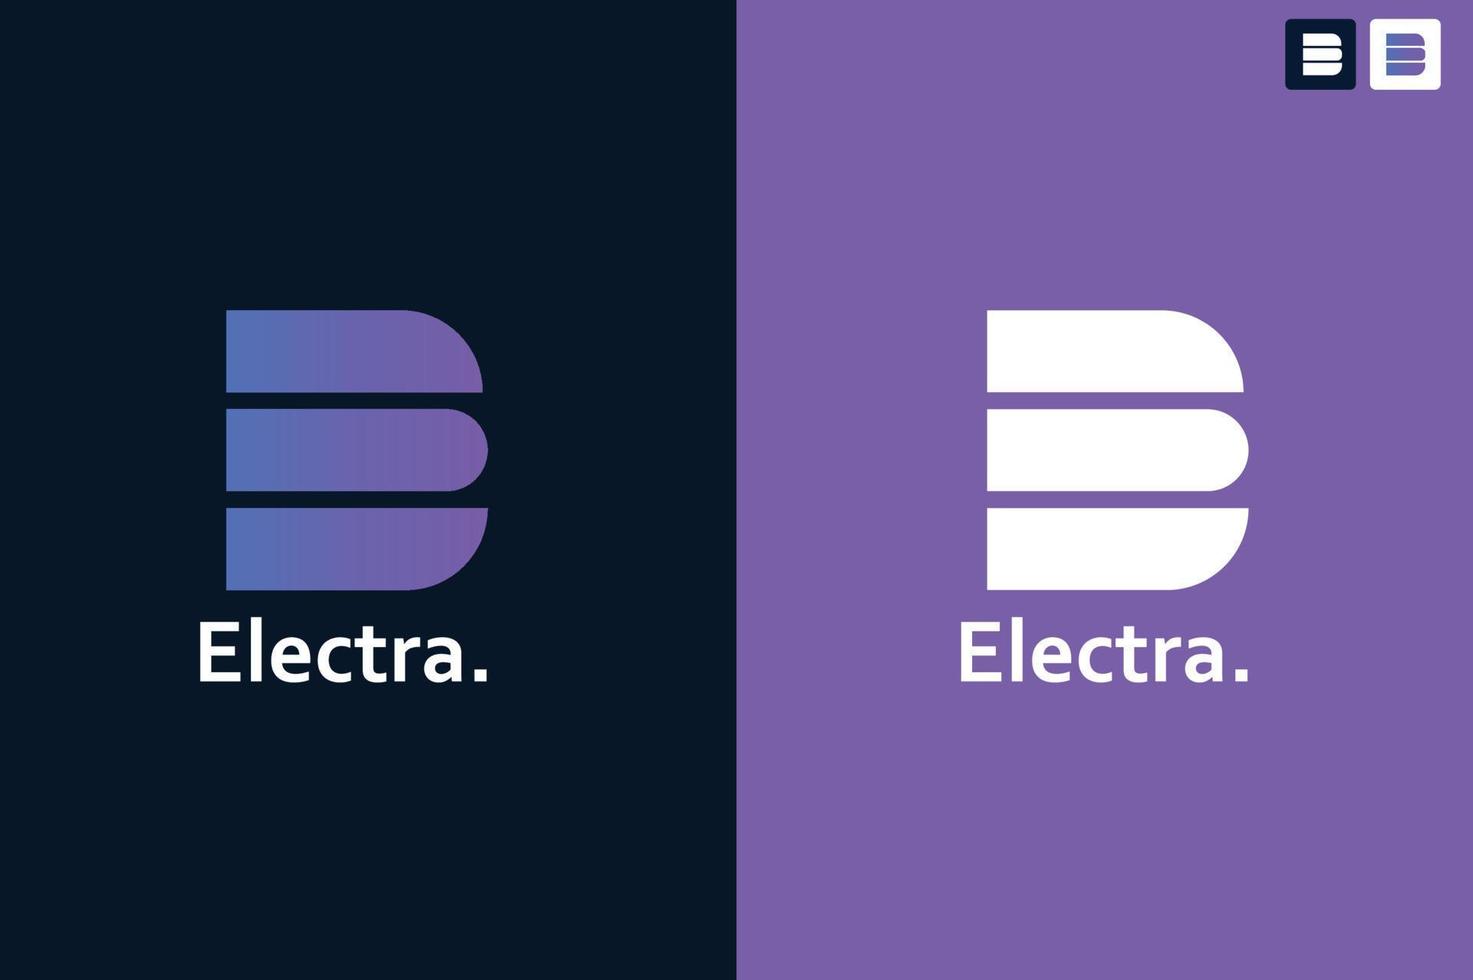 Electra corporate company logo design vector